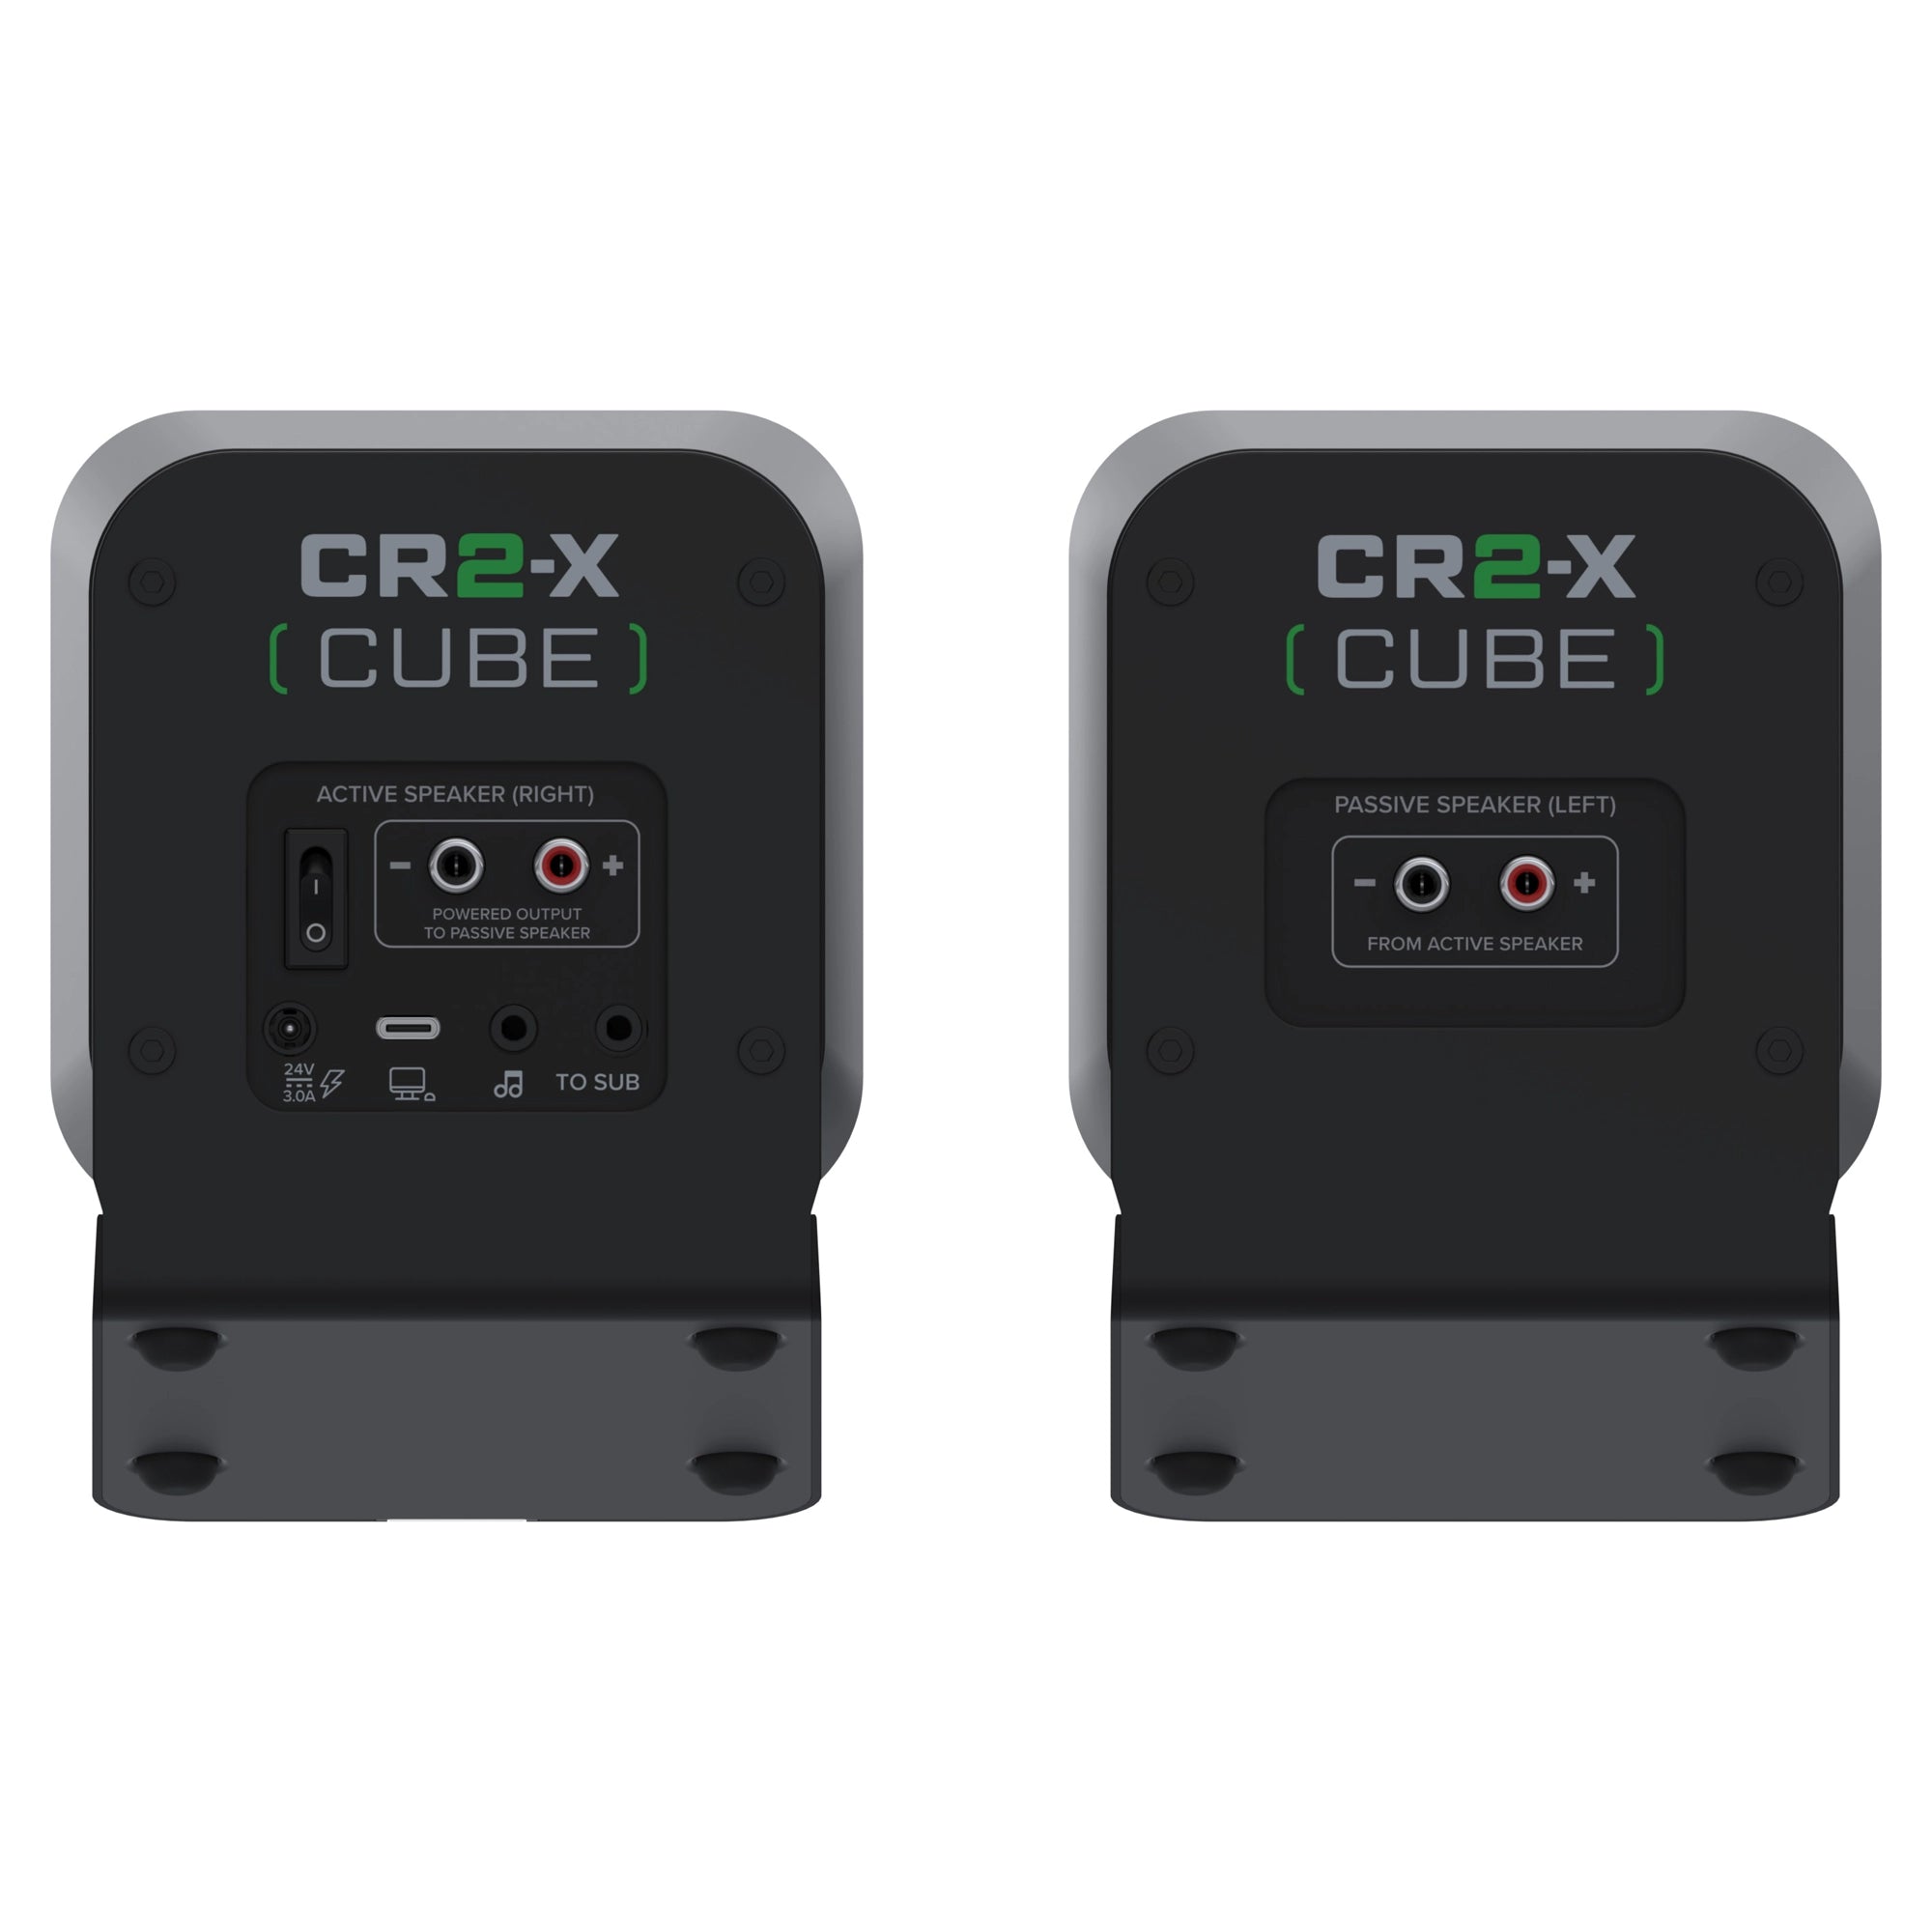 Mackie CR2-X Cube Compact Desktop Speakers